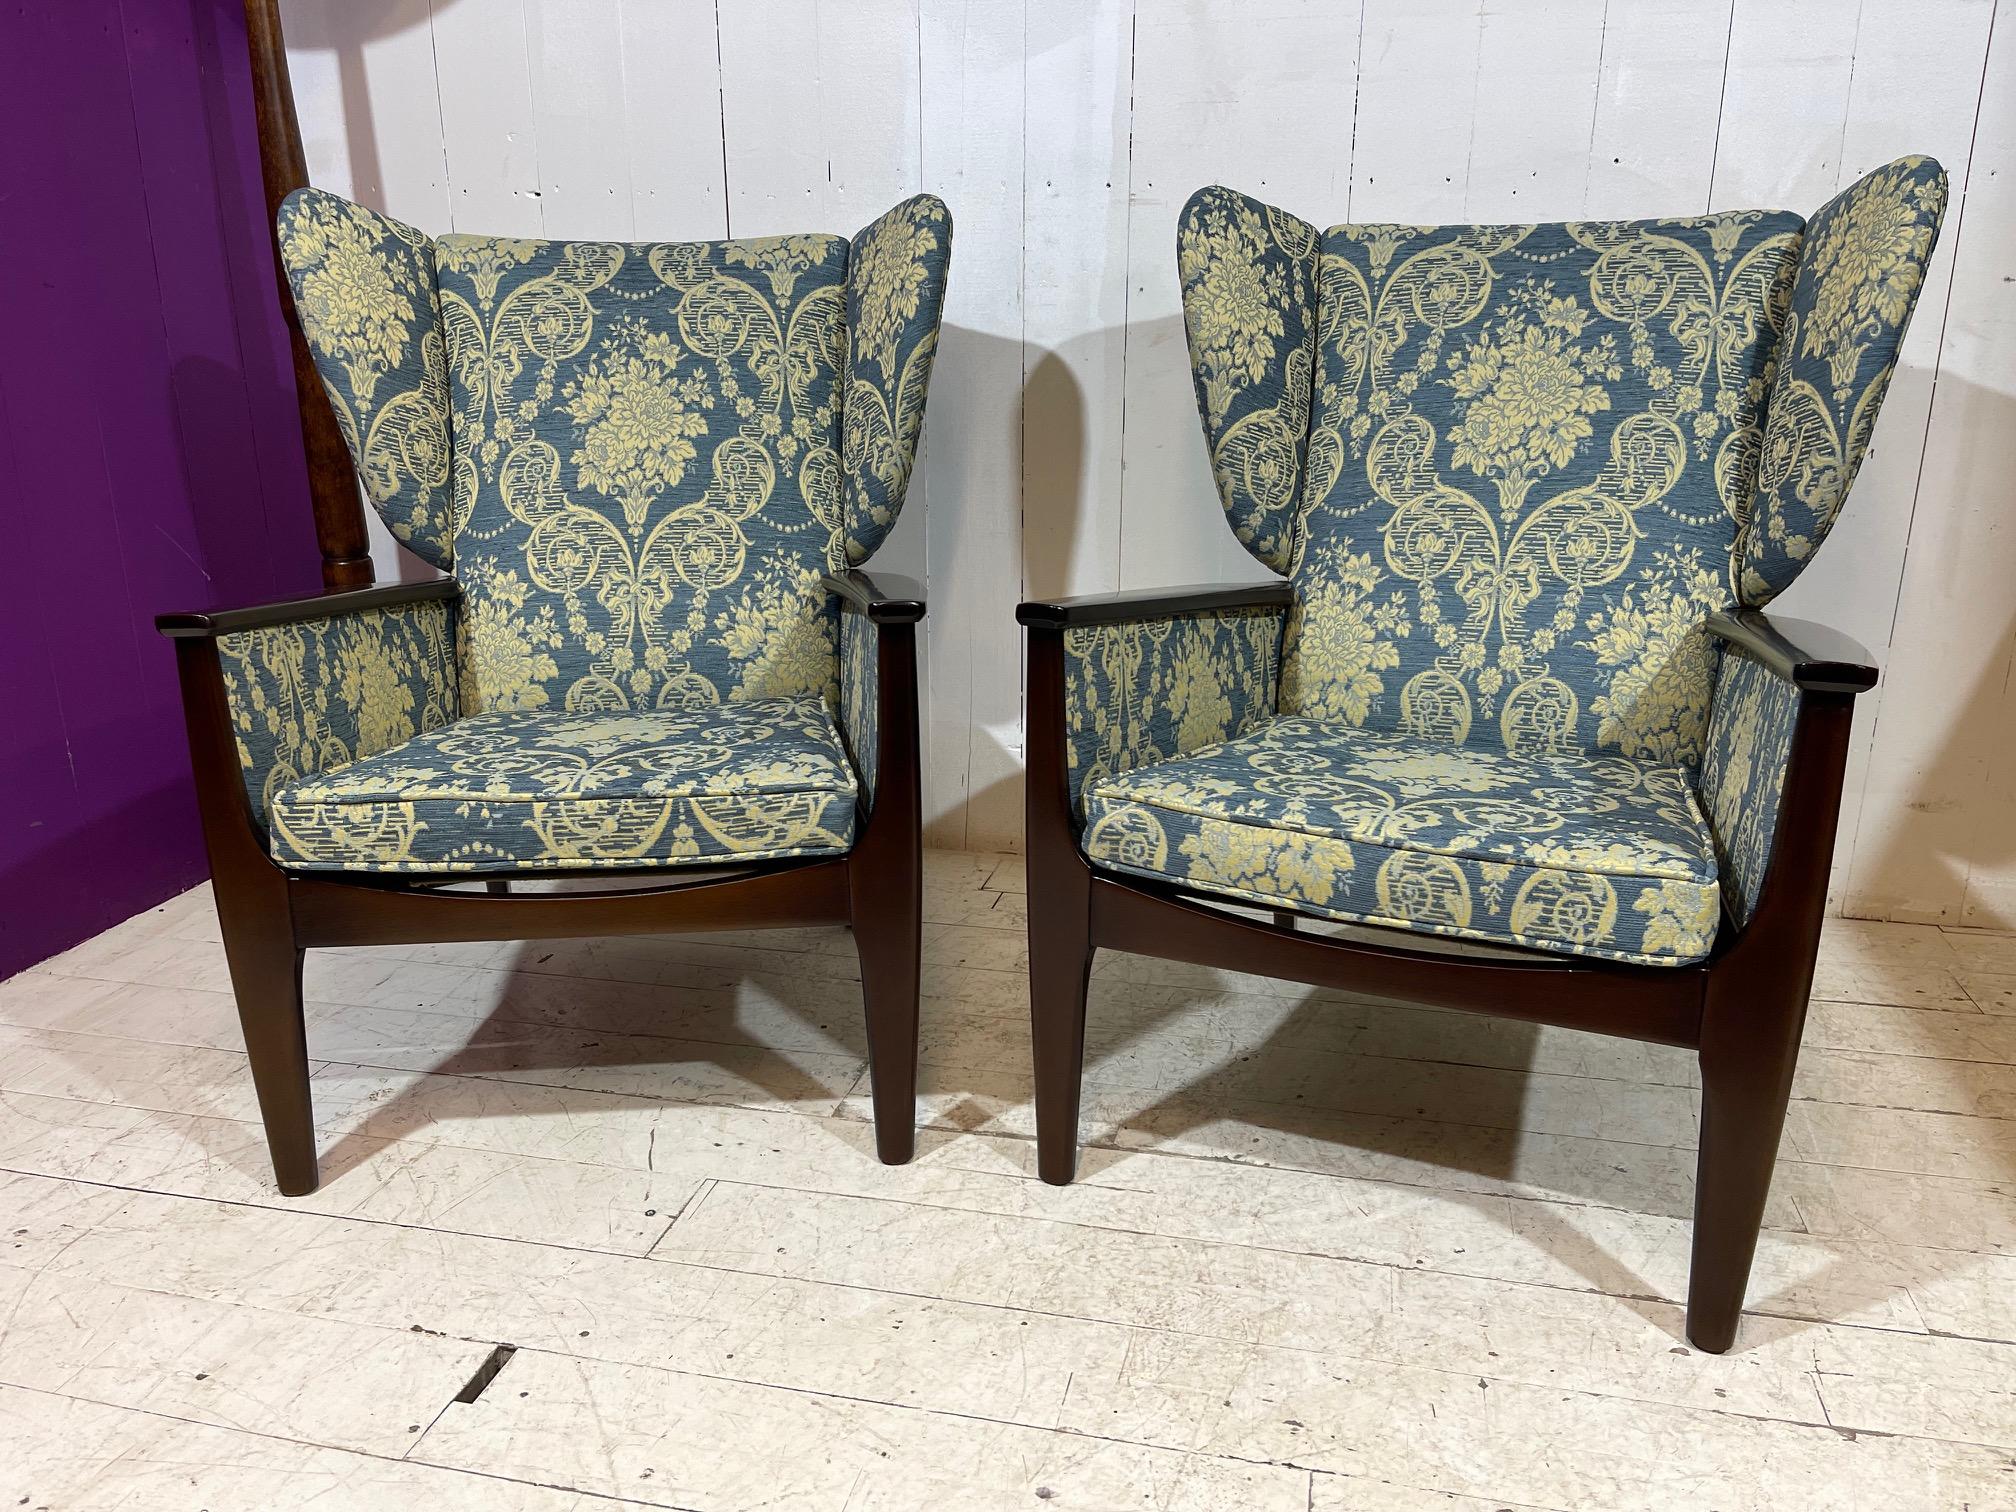 Der Inbegriff von Vintage-Raffinesse - The Rare Chair Company präsentiert stolz einen sorgfältig restaurierten Vintage Parker Knoll Wingback Armchair. Dieses ikonische Möbelstück mit zeitlosem Charme hat einen glänzenden Rahmen aus lackiertem